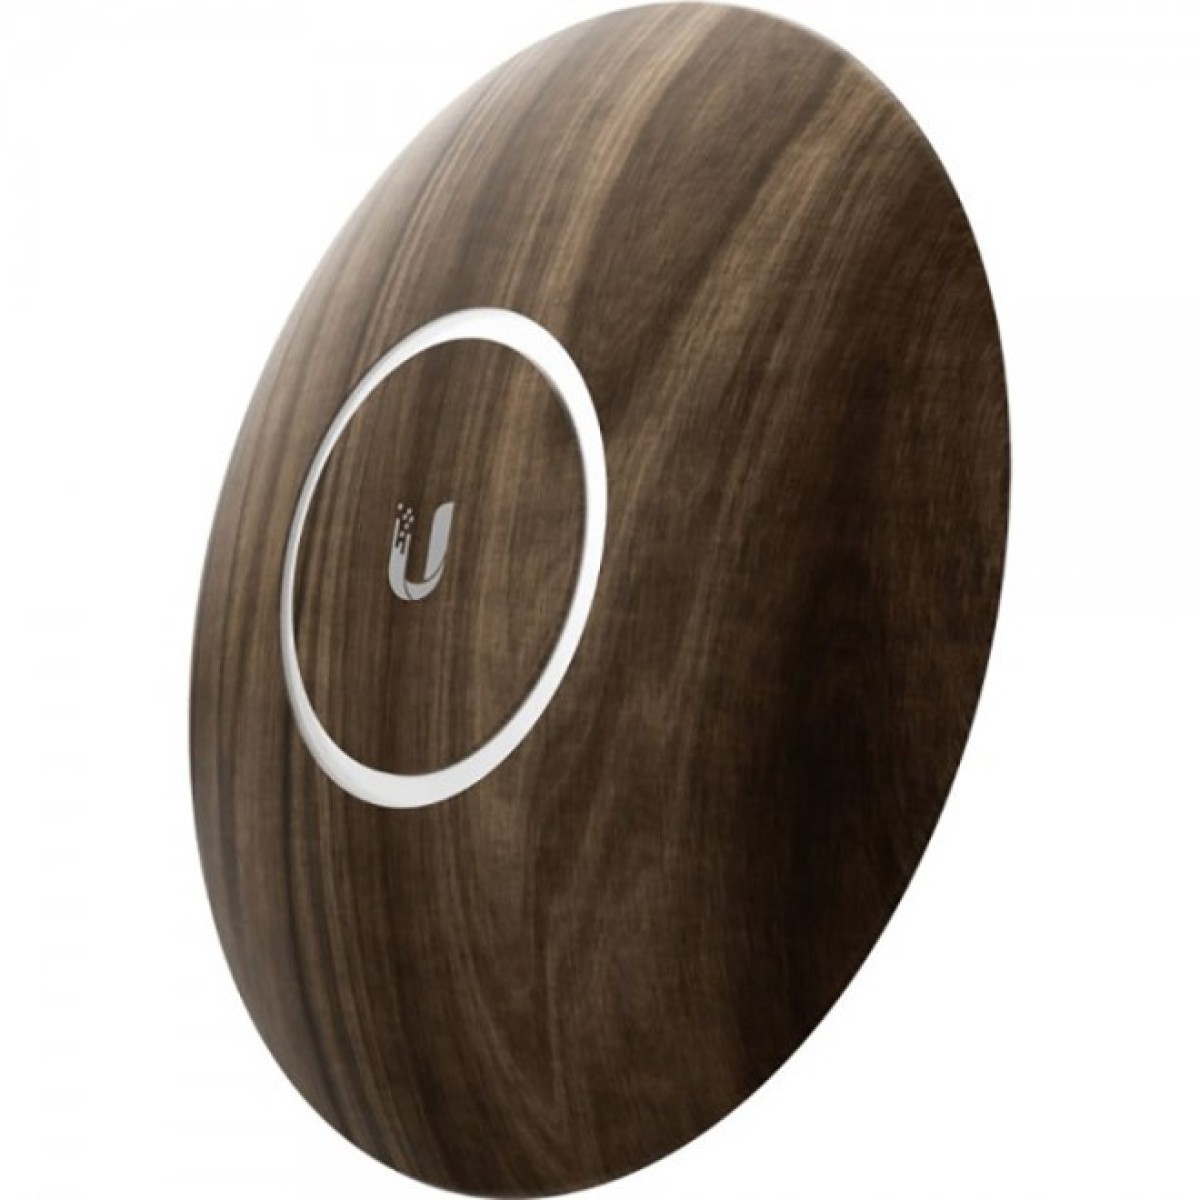 Декоративная накладка на точку доступа Ubiquiti UniFi AP nanoHD Wood Design, 3-Pack (nHD-cover-Wood-3) 98_98.jpg - фото 5